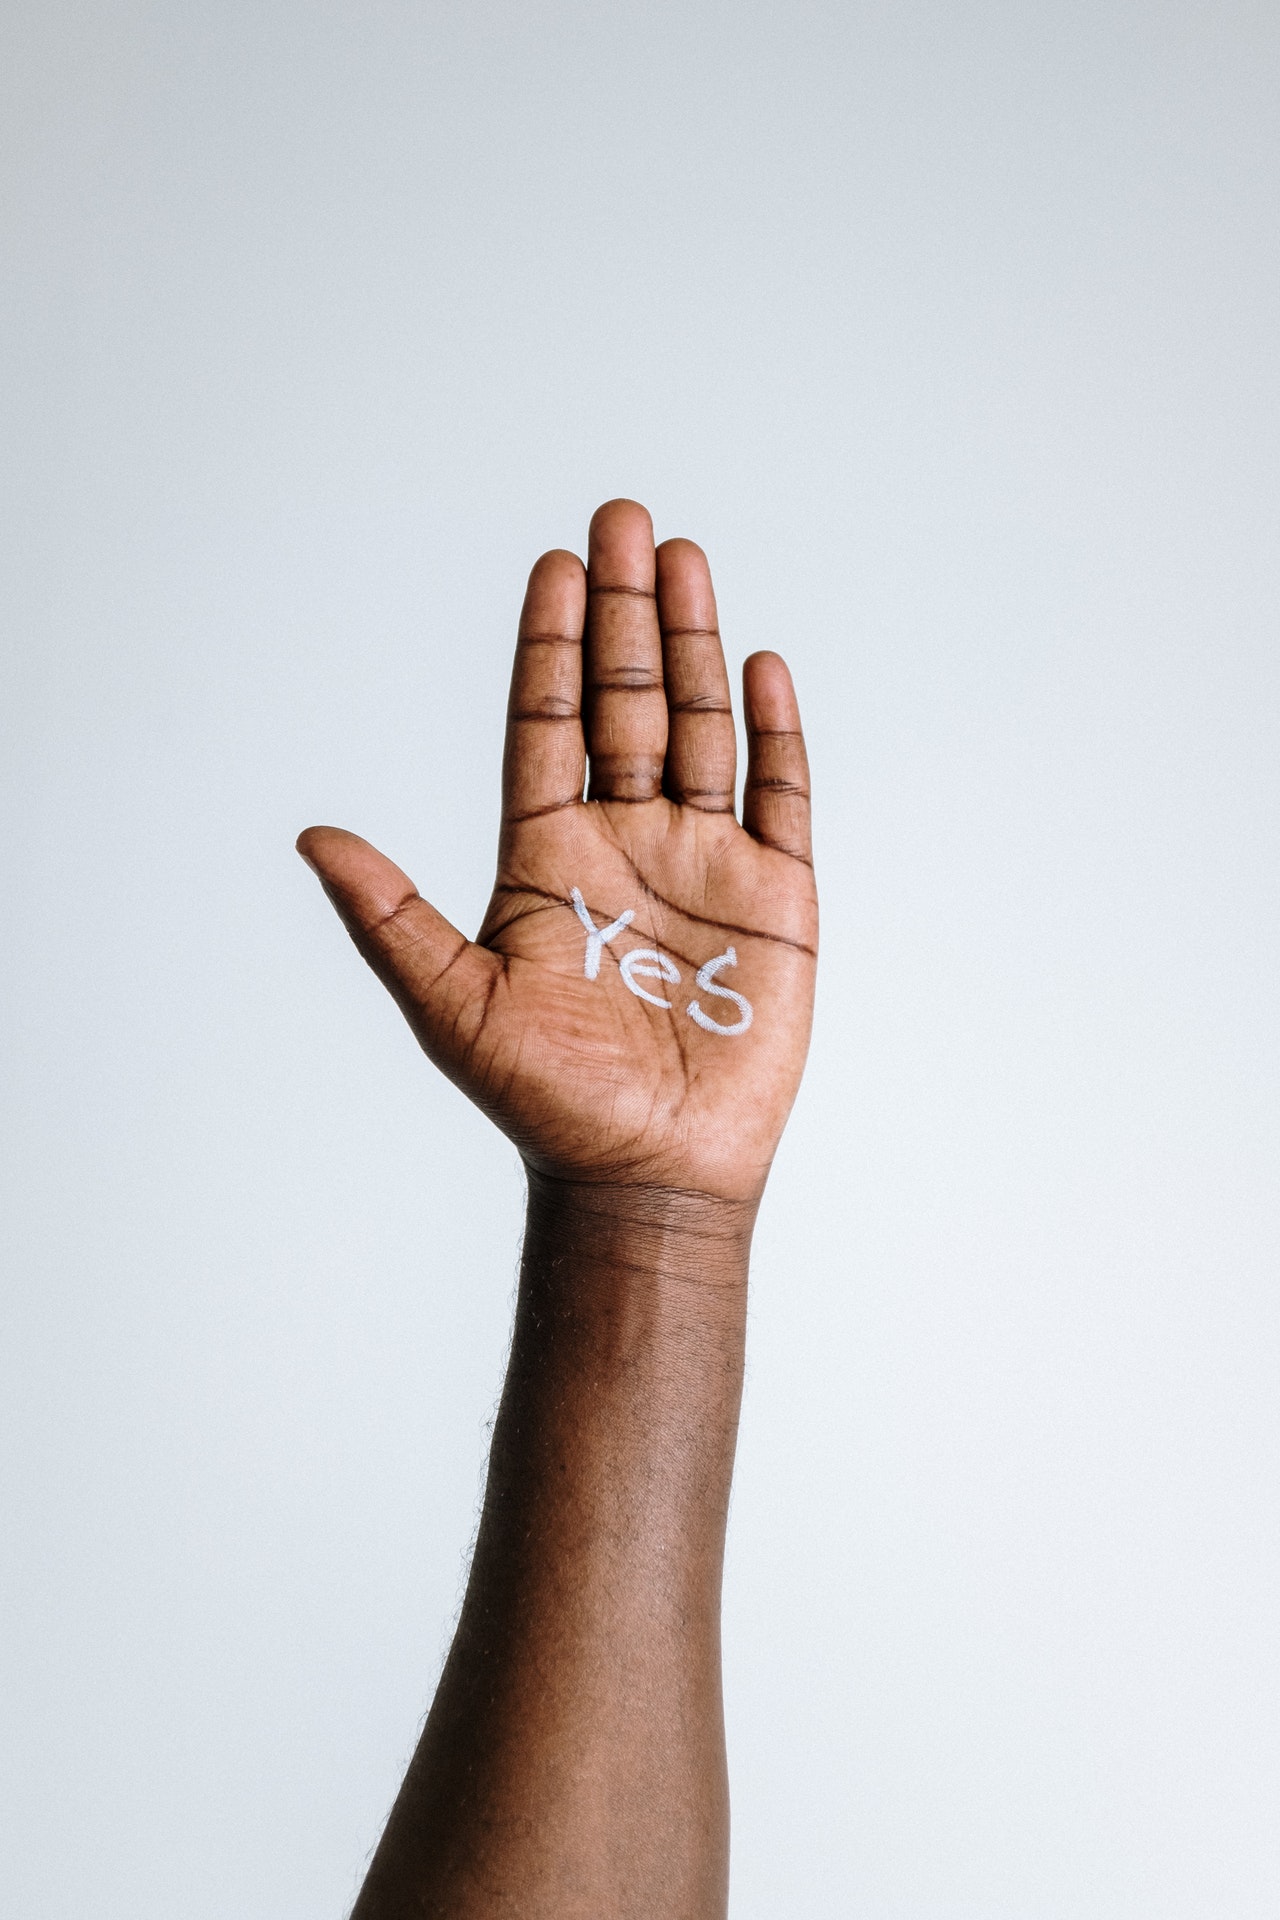 Eine dunkle Hand vor einem hellgrauen Hintergrund, in deren Handinnenfläche das Wort 'Yes' steht